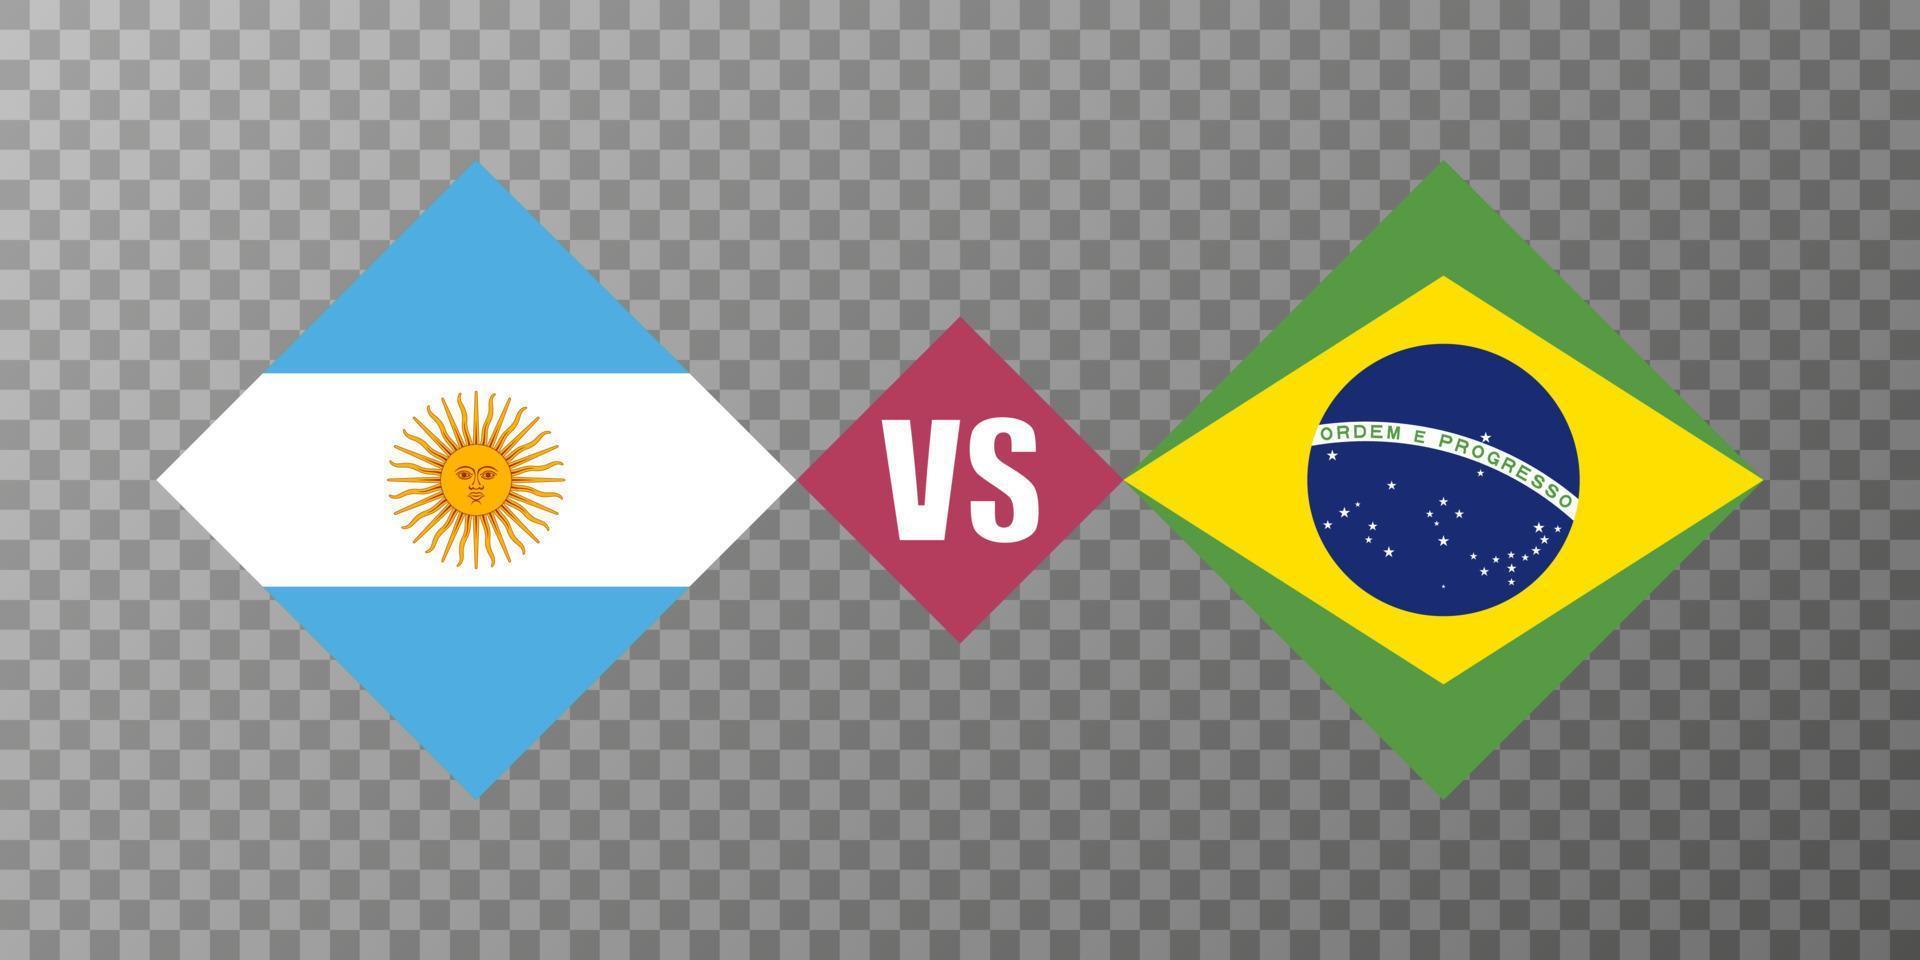 brasilien vs argentinien flaggenkonzept. Vektor-Illustration. vektor